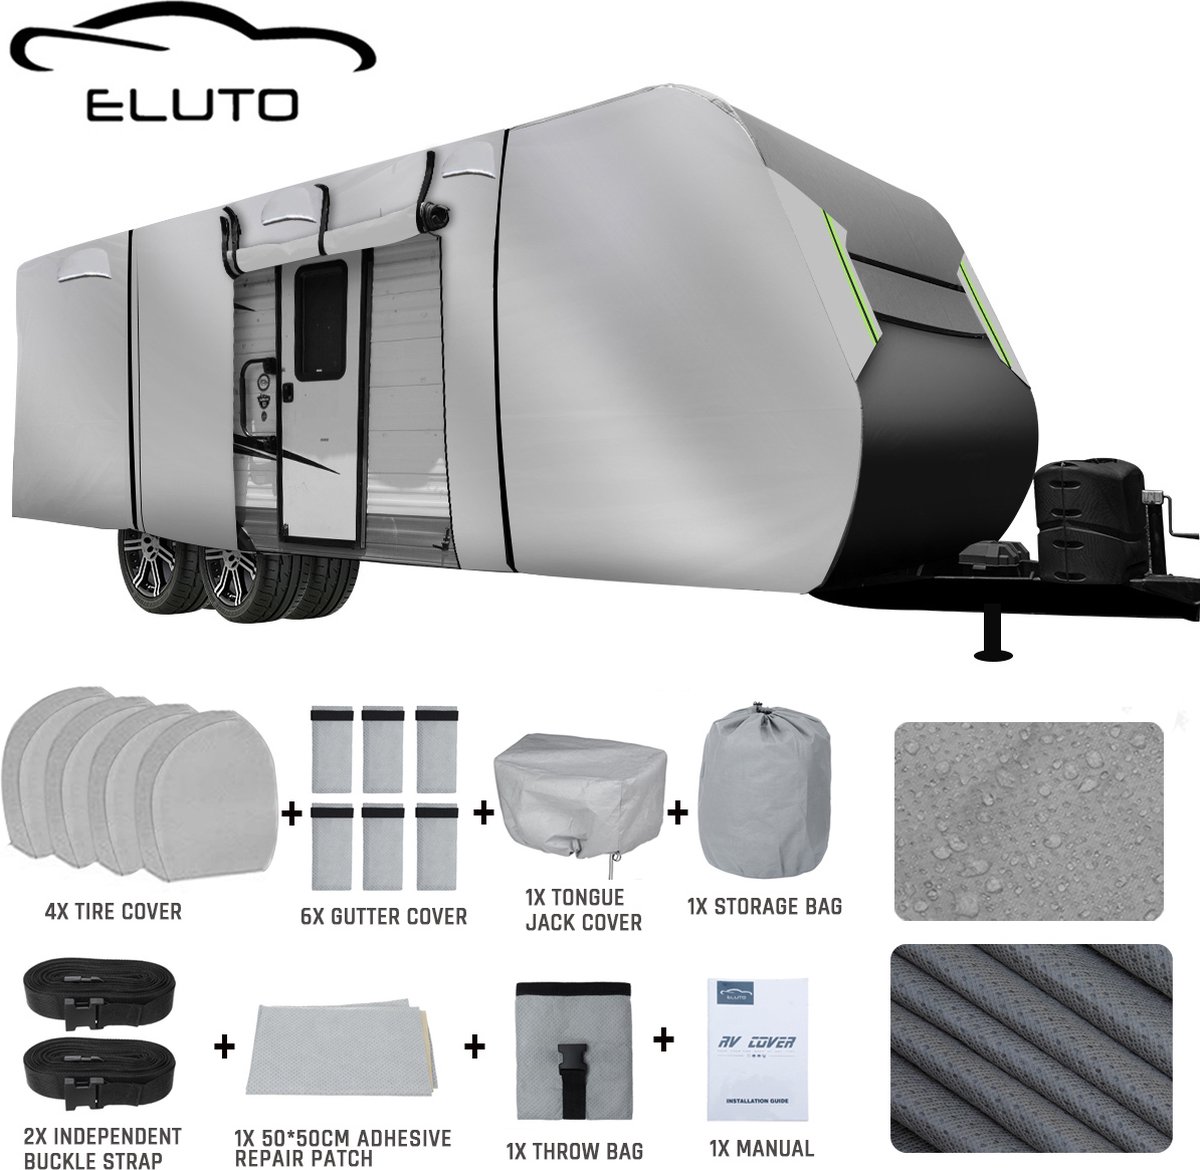 ELUTO Caravanhoes 914*267*274 CM - Waterdicht, UV-bescherming, sneeuwbestendig - Grijs